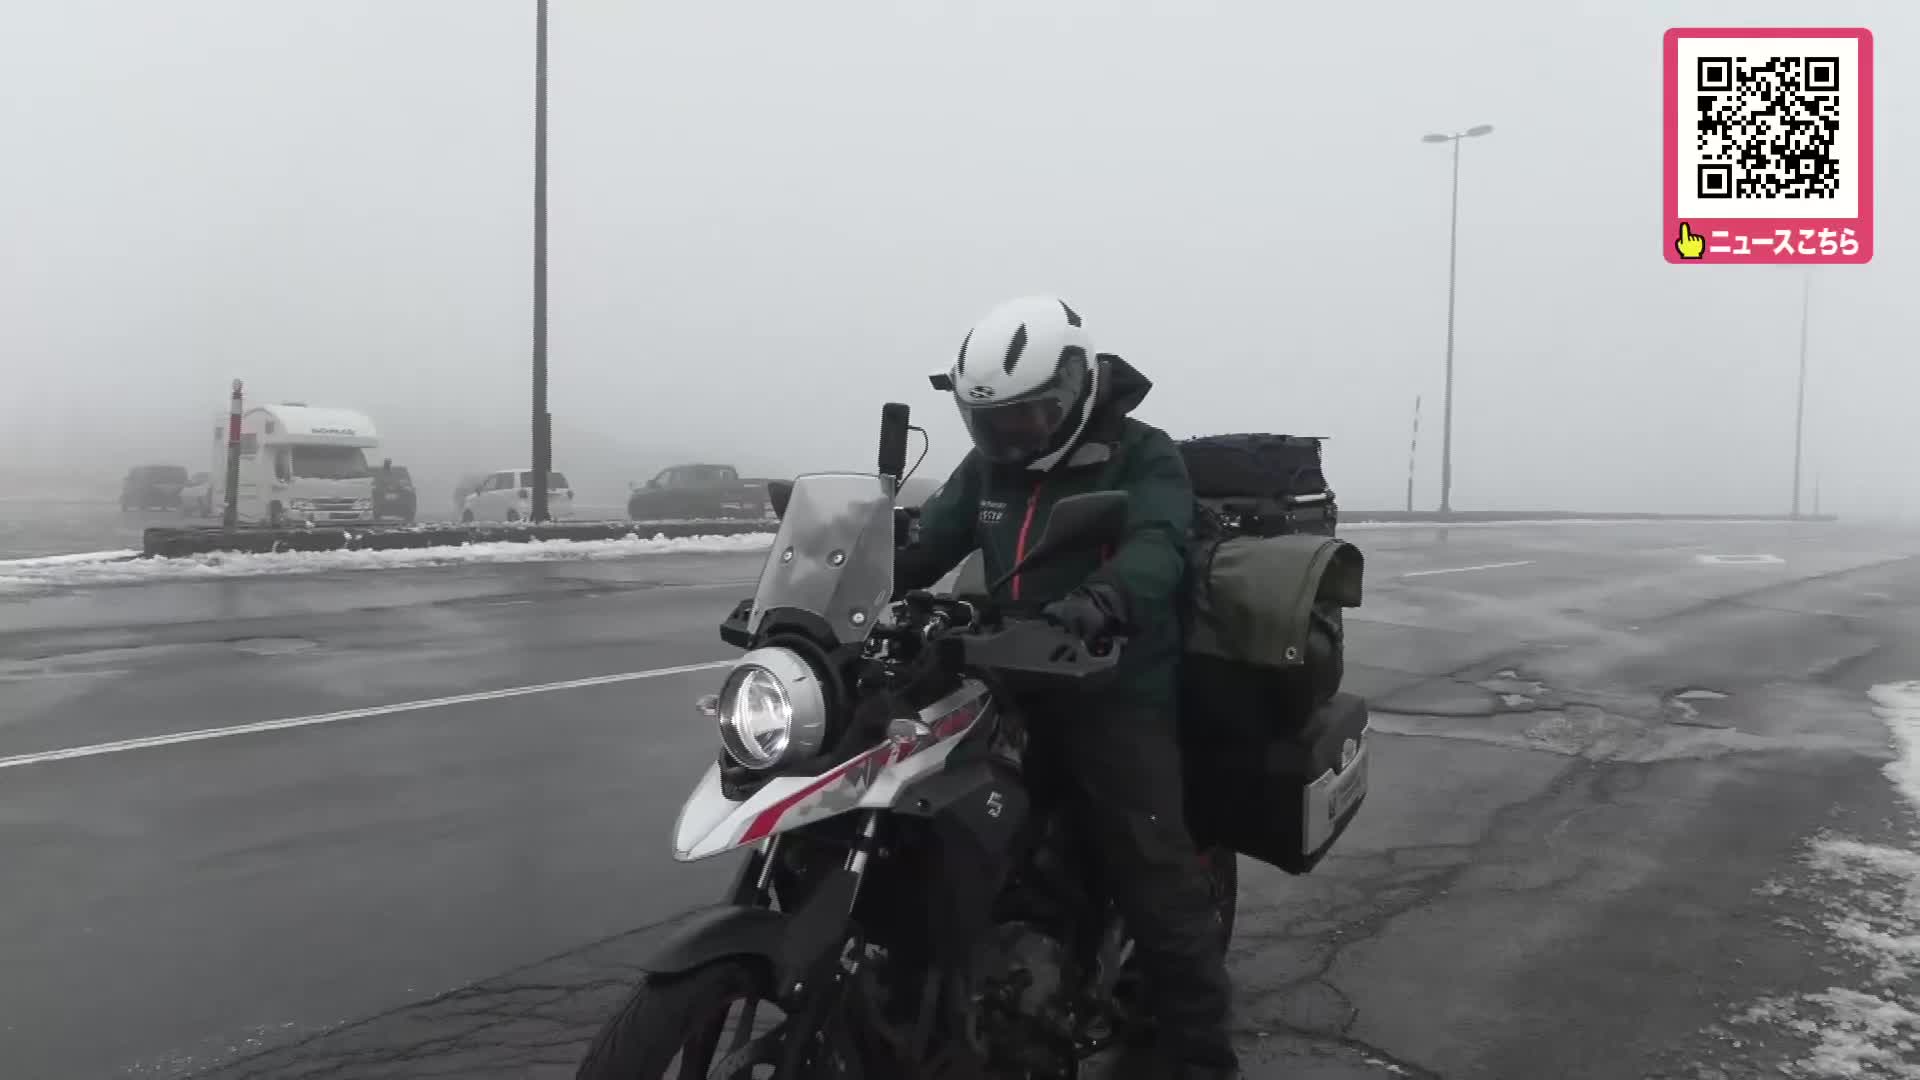 「こんな時期に降るなんて…」バイク旅行者も慎重に運転 北海道で雪 峠では数センチ積もる 最低気温も氷点下近く